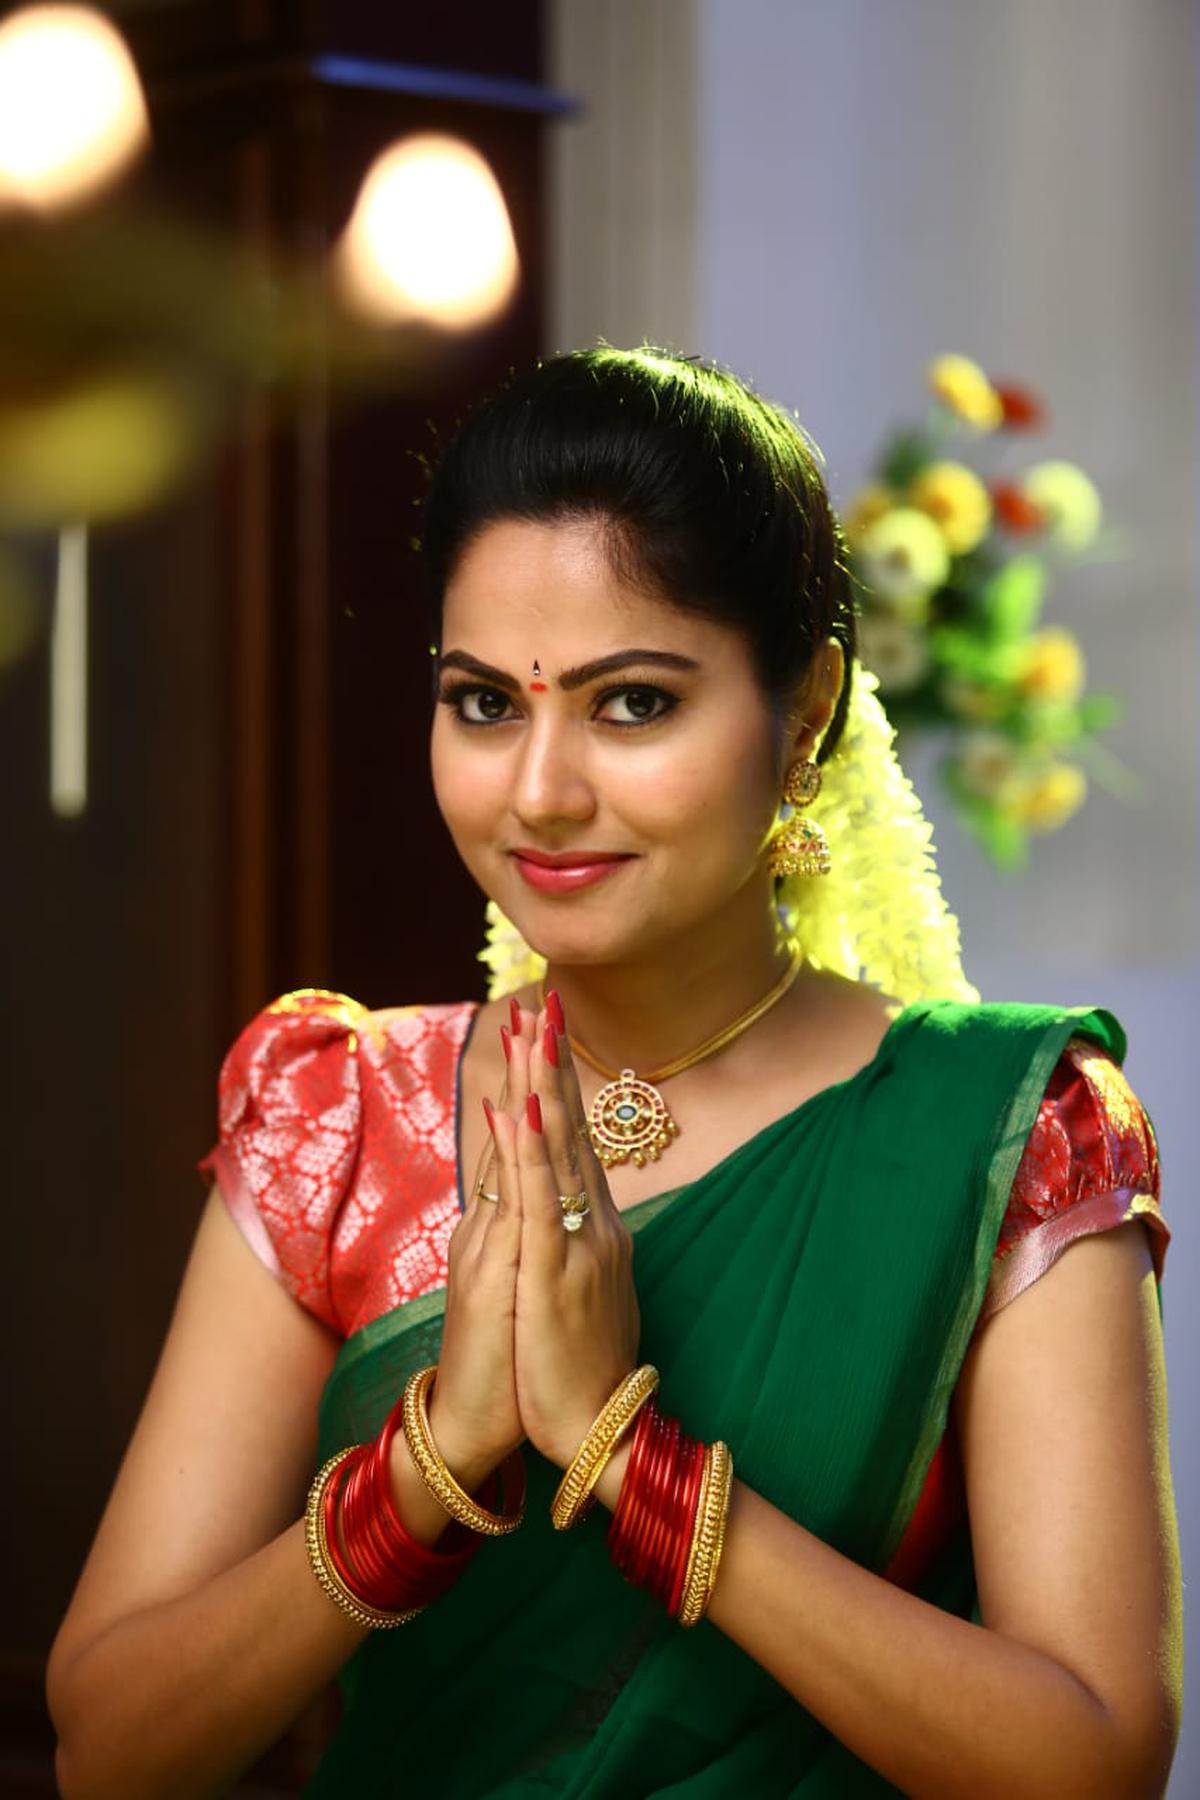 Suhasini Telugu Sex - Riding on versatility: Suhasini in Star Maa's serial 'Maamagaru' - The Hindu